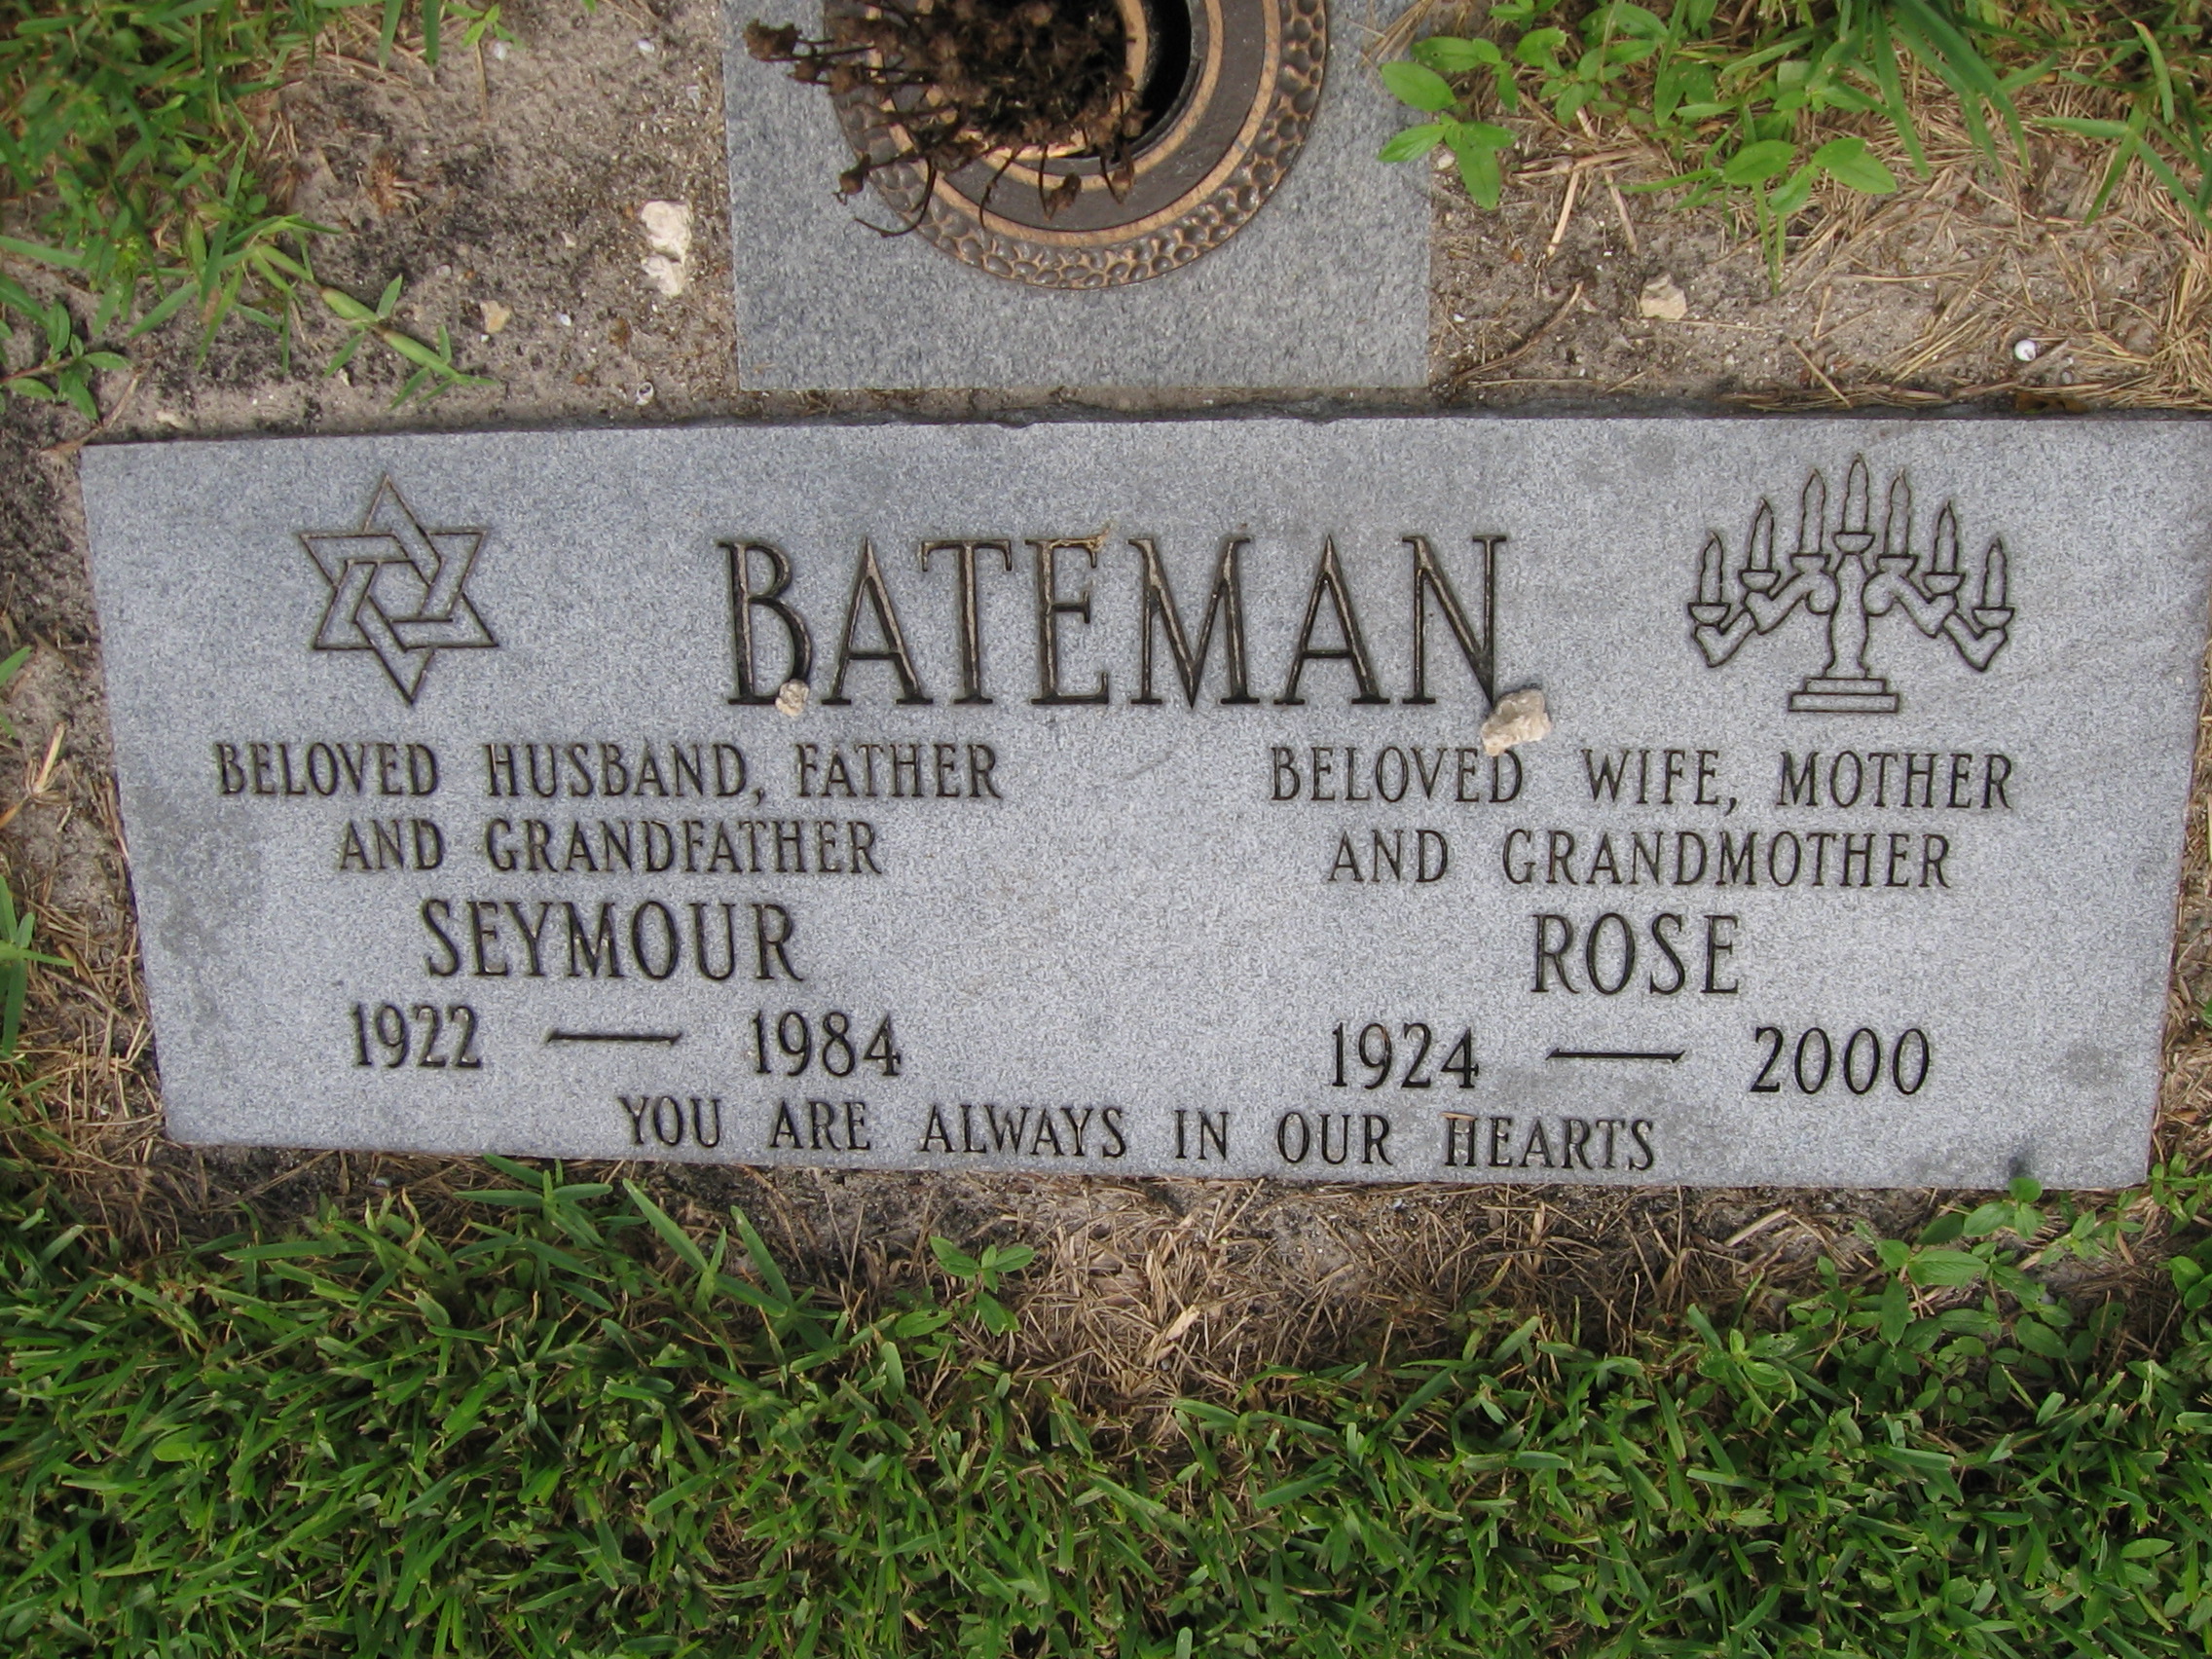 Rose Bateman